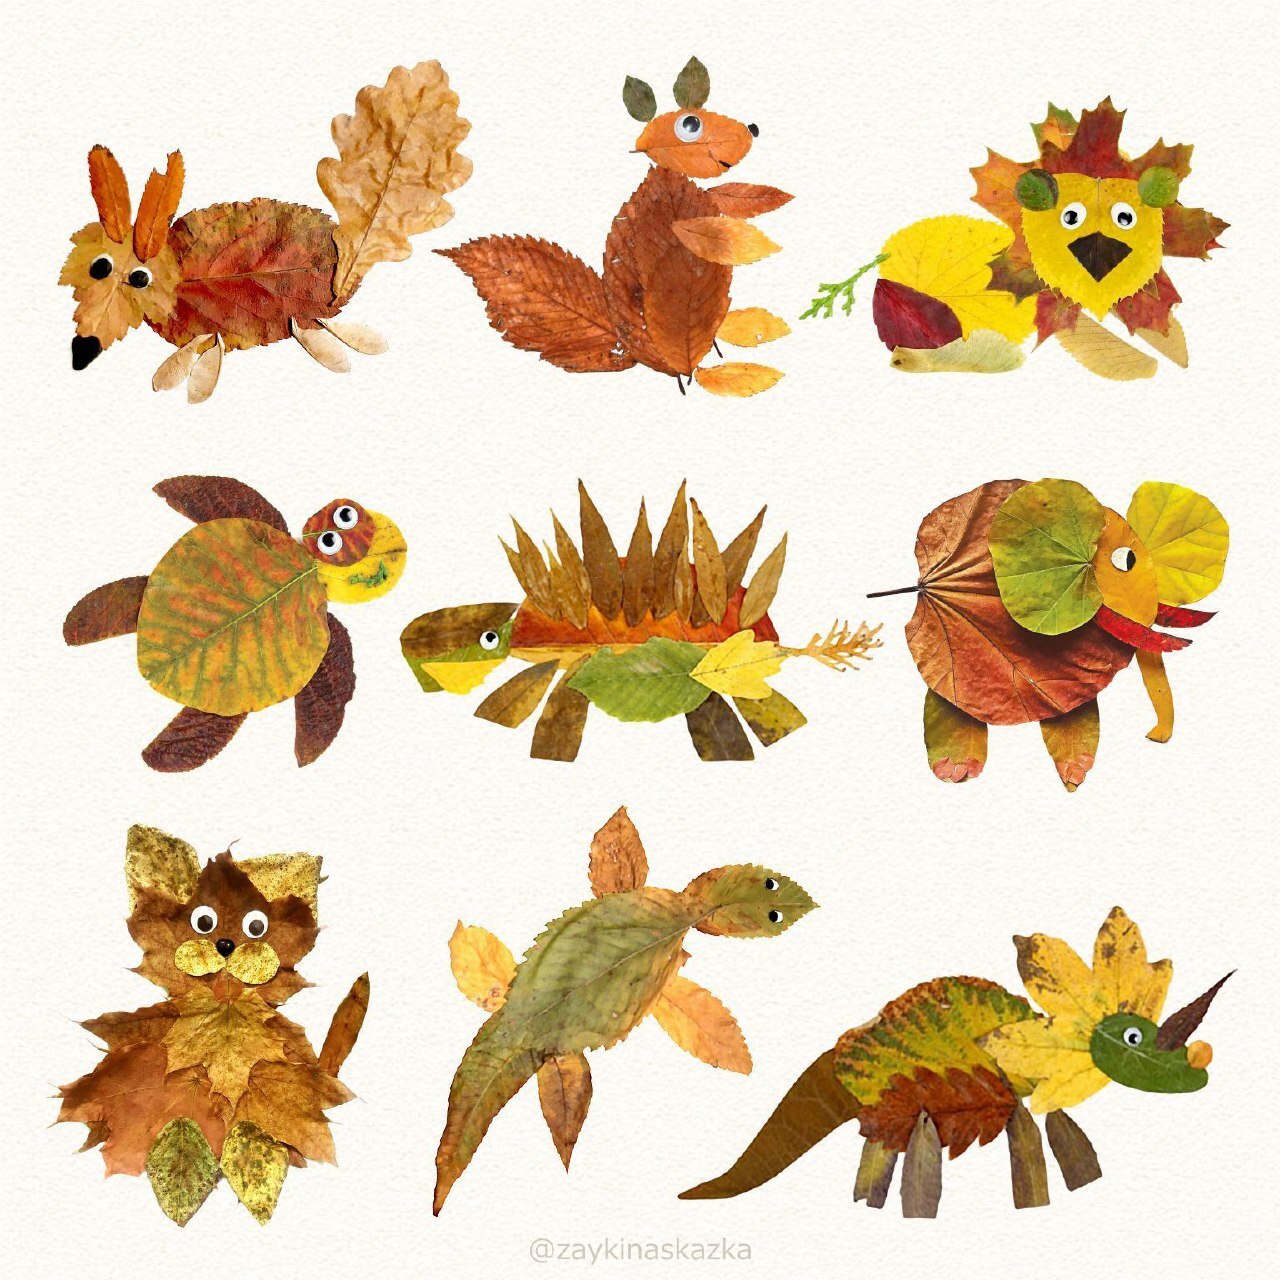 Осенние поделки для детского сада: идеи из листьев, каштанов и желудей